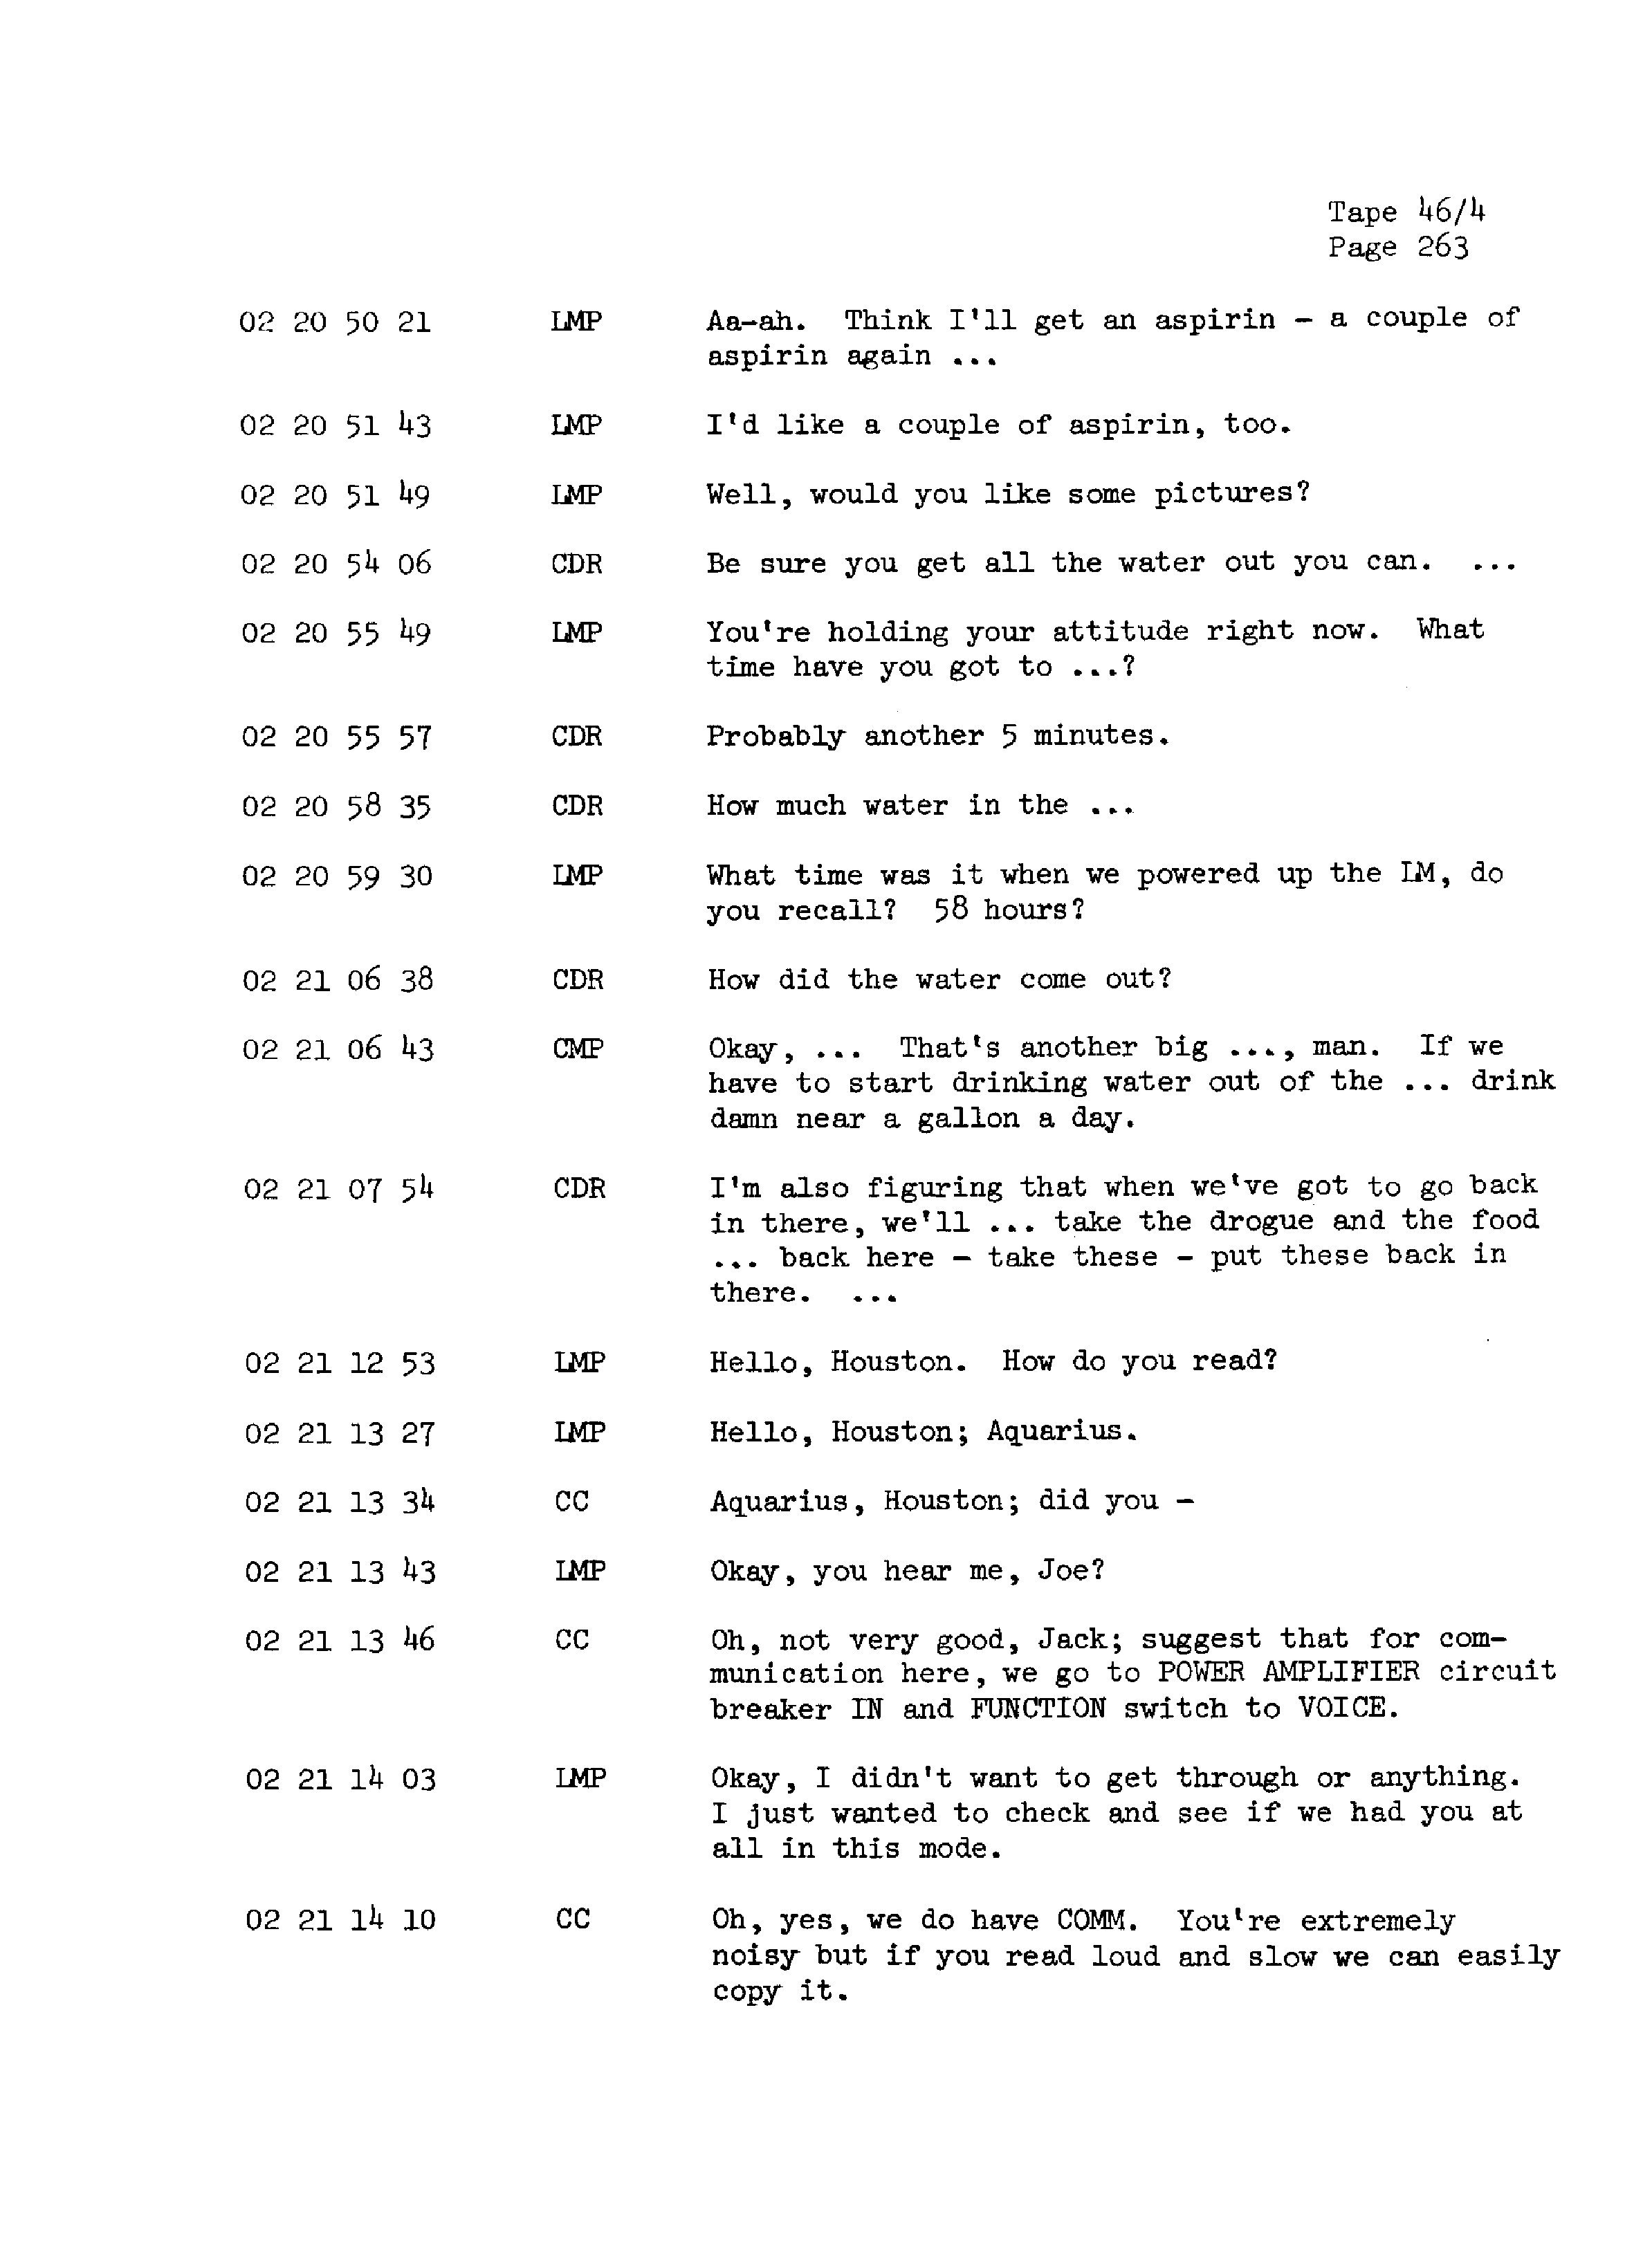 Page 270 of Apollo 13’s original transcript